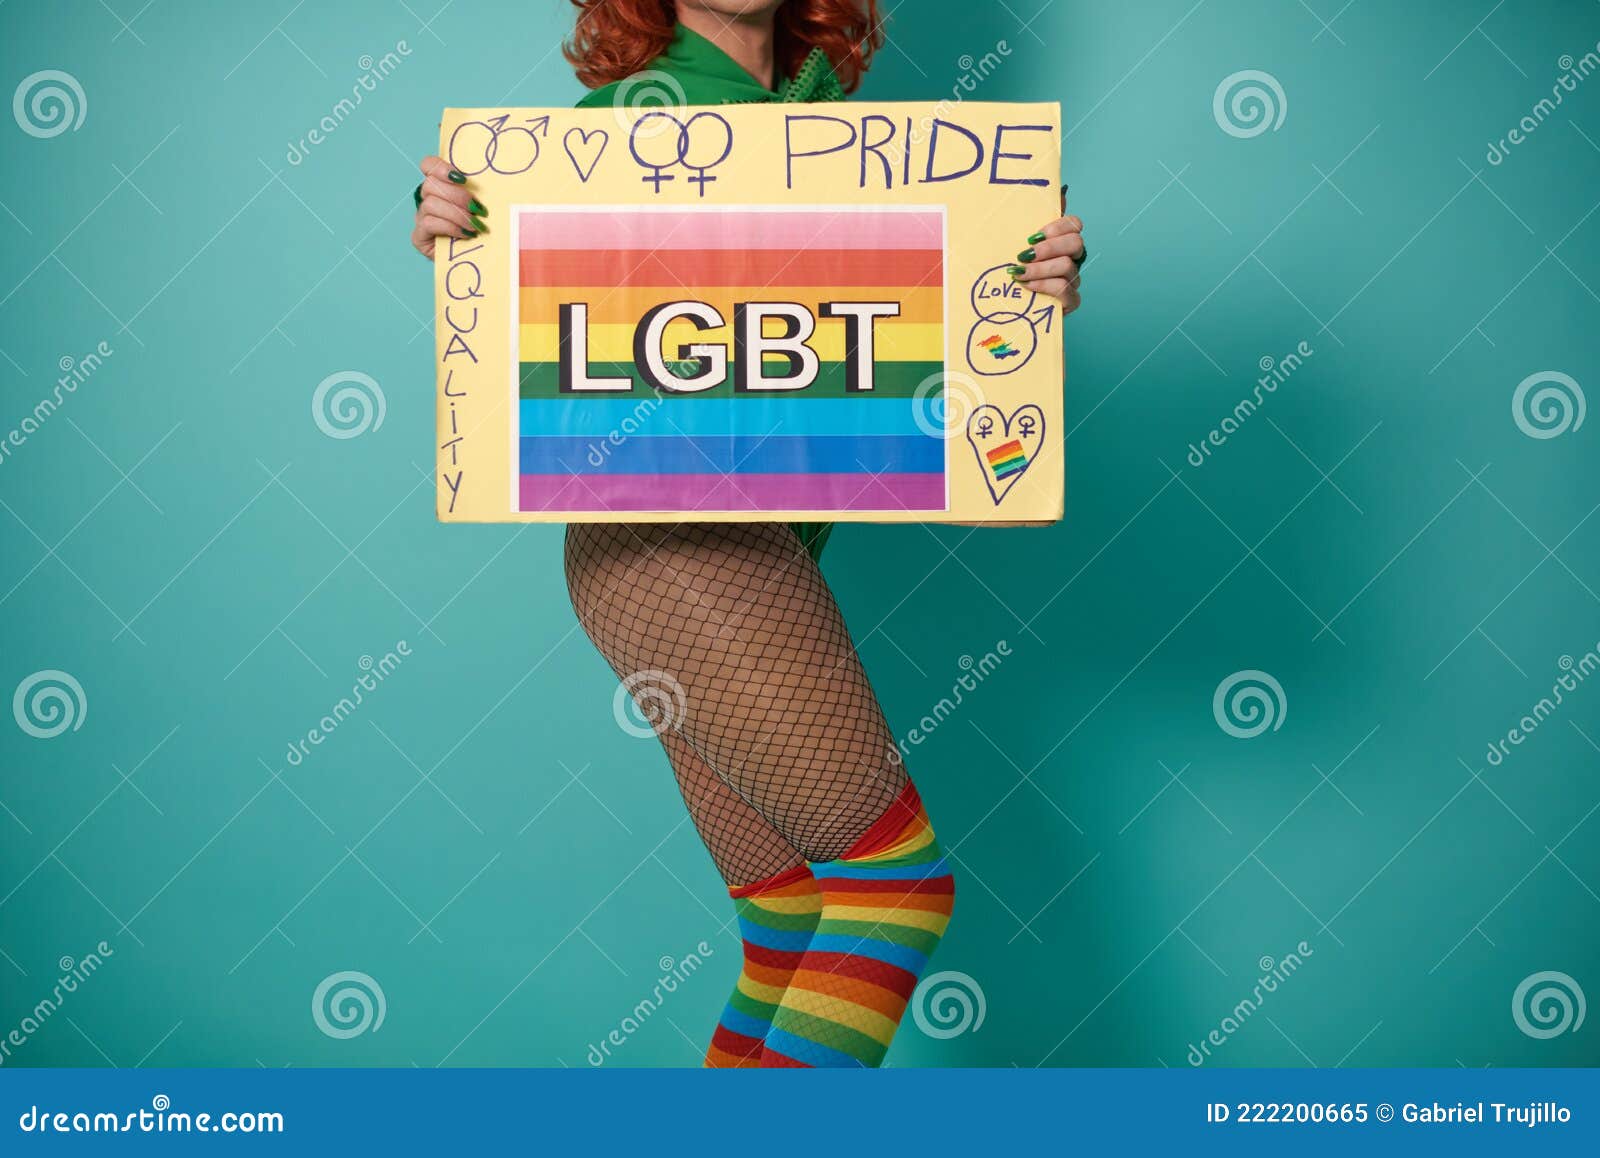 Transgender Stockings